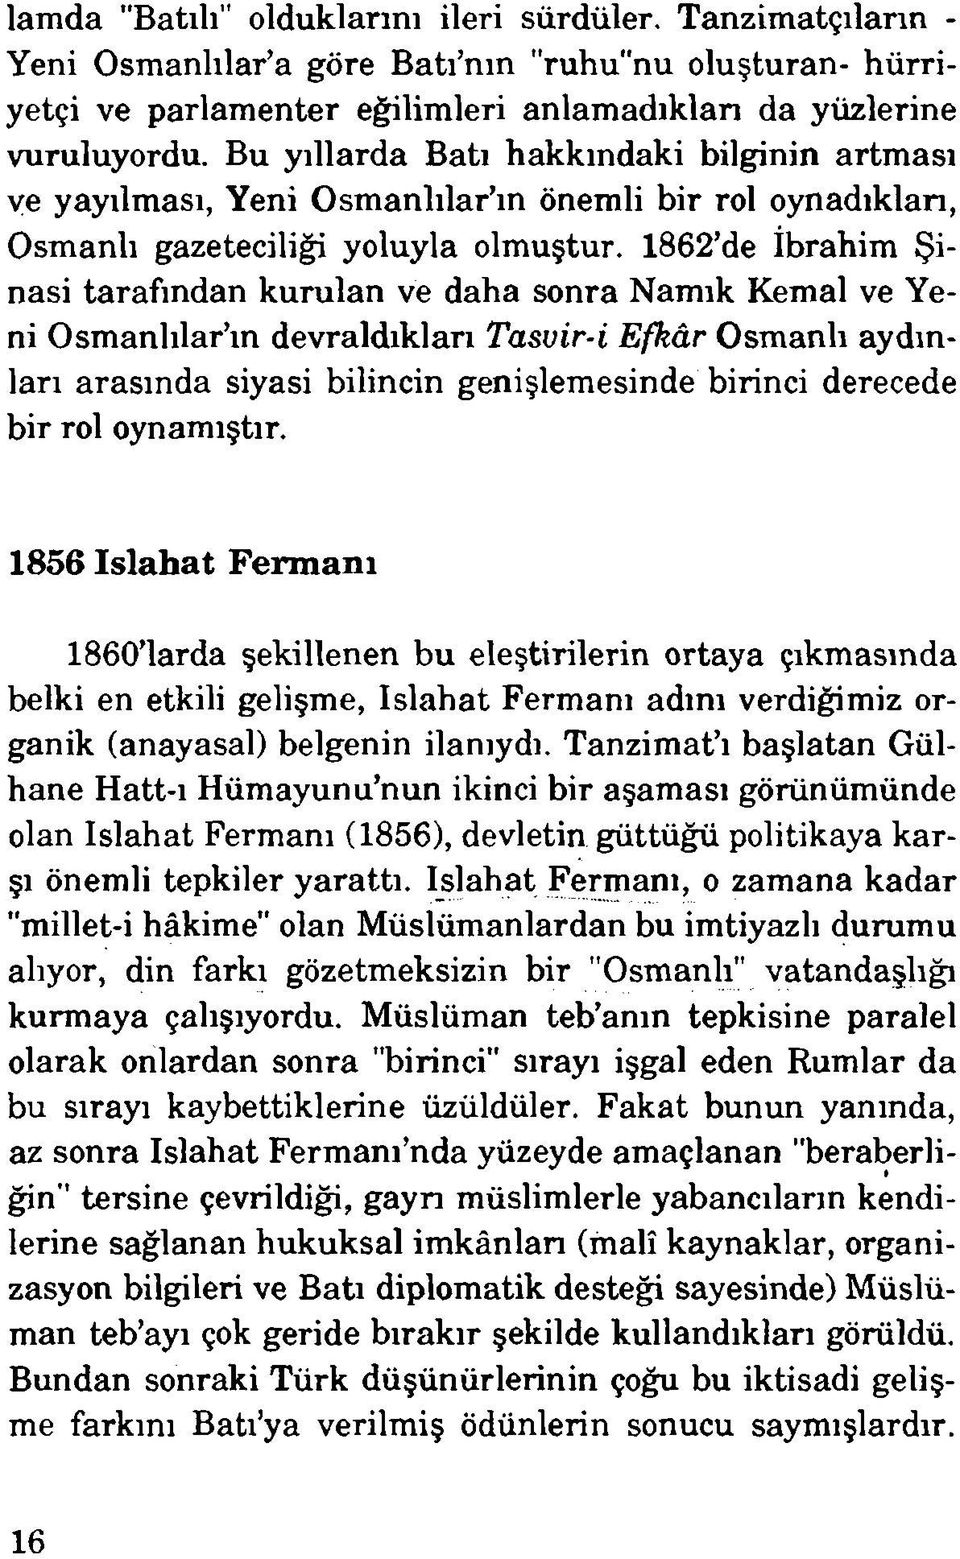 1862 de İbrahim Şinasi tarafından kurulan ve daha sonra Namık Kemal ve Yeni Osmanlılar ın devraldıkları Tasvir-i Efkâr Osmanlı aydınları arasında siyasi bilincin genişlemesinde birinci derecede bir